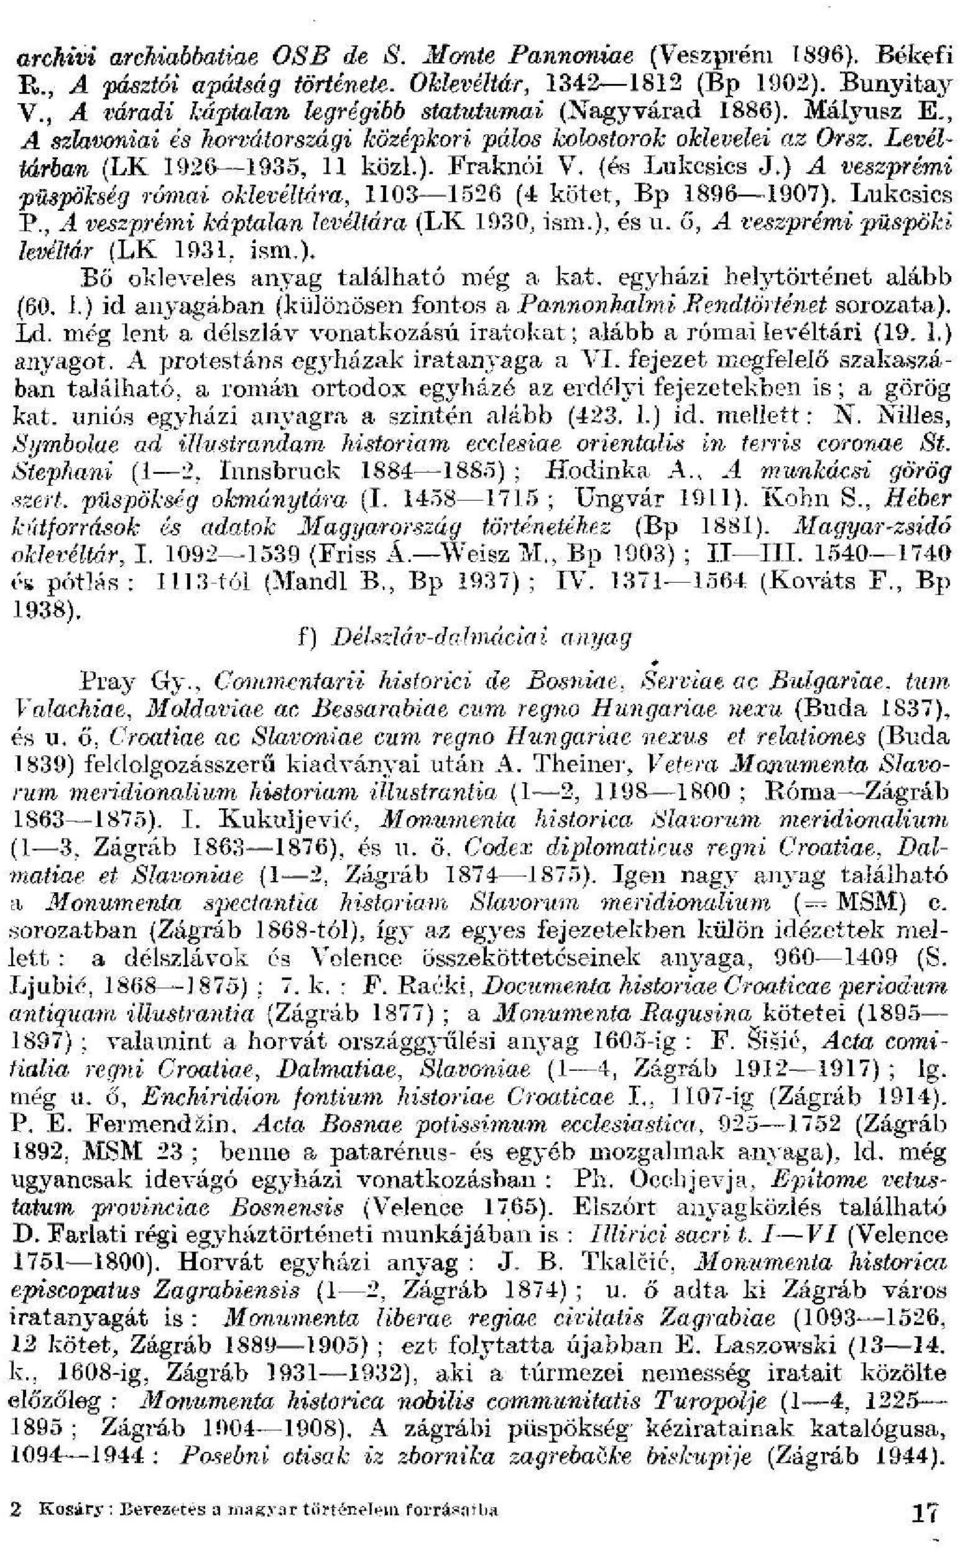 (és Lukcsics J.) A veszprémi püspökség rámái oklevéltára, 1103 1526 (4 kötet, Bp 1896 1907). Lukcsics P., A veszprémi káptalan levéltára (LK 1930, ism.), és u.